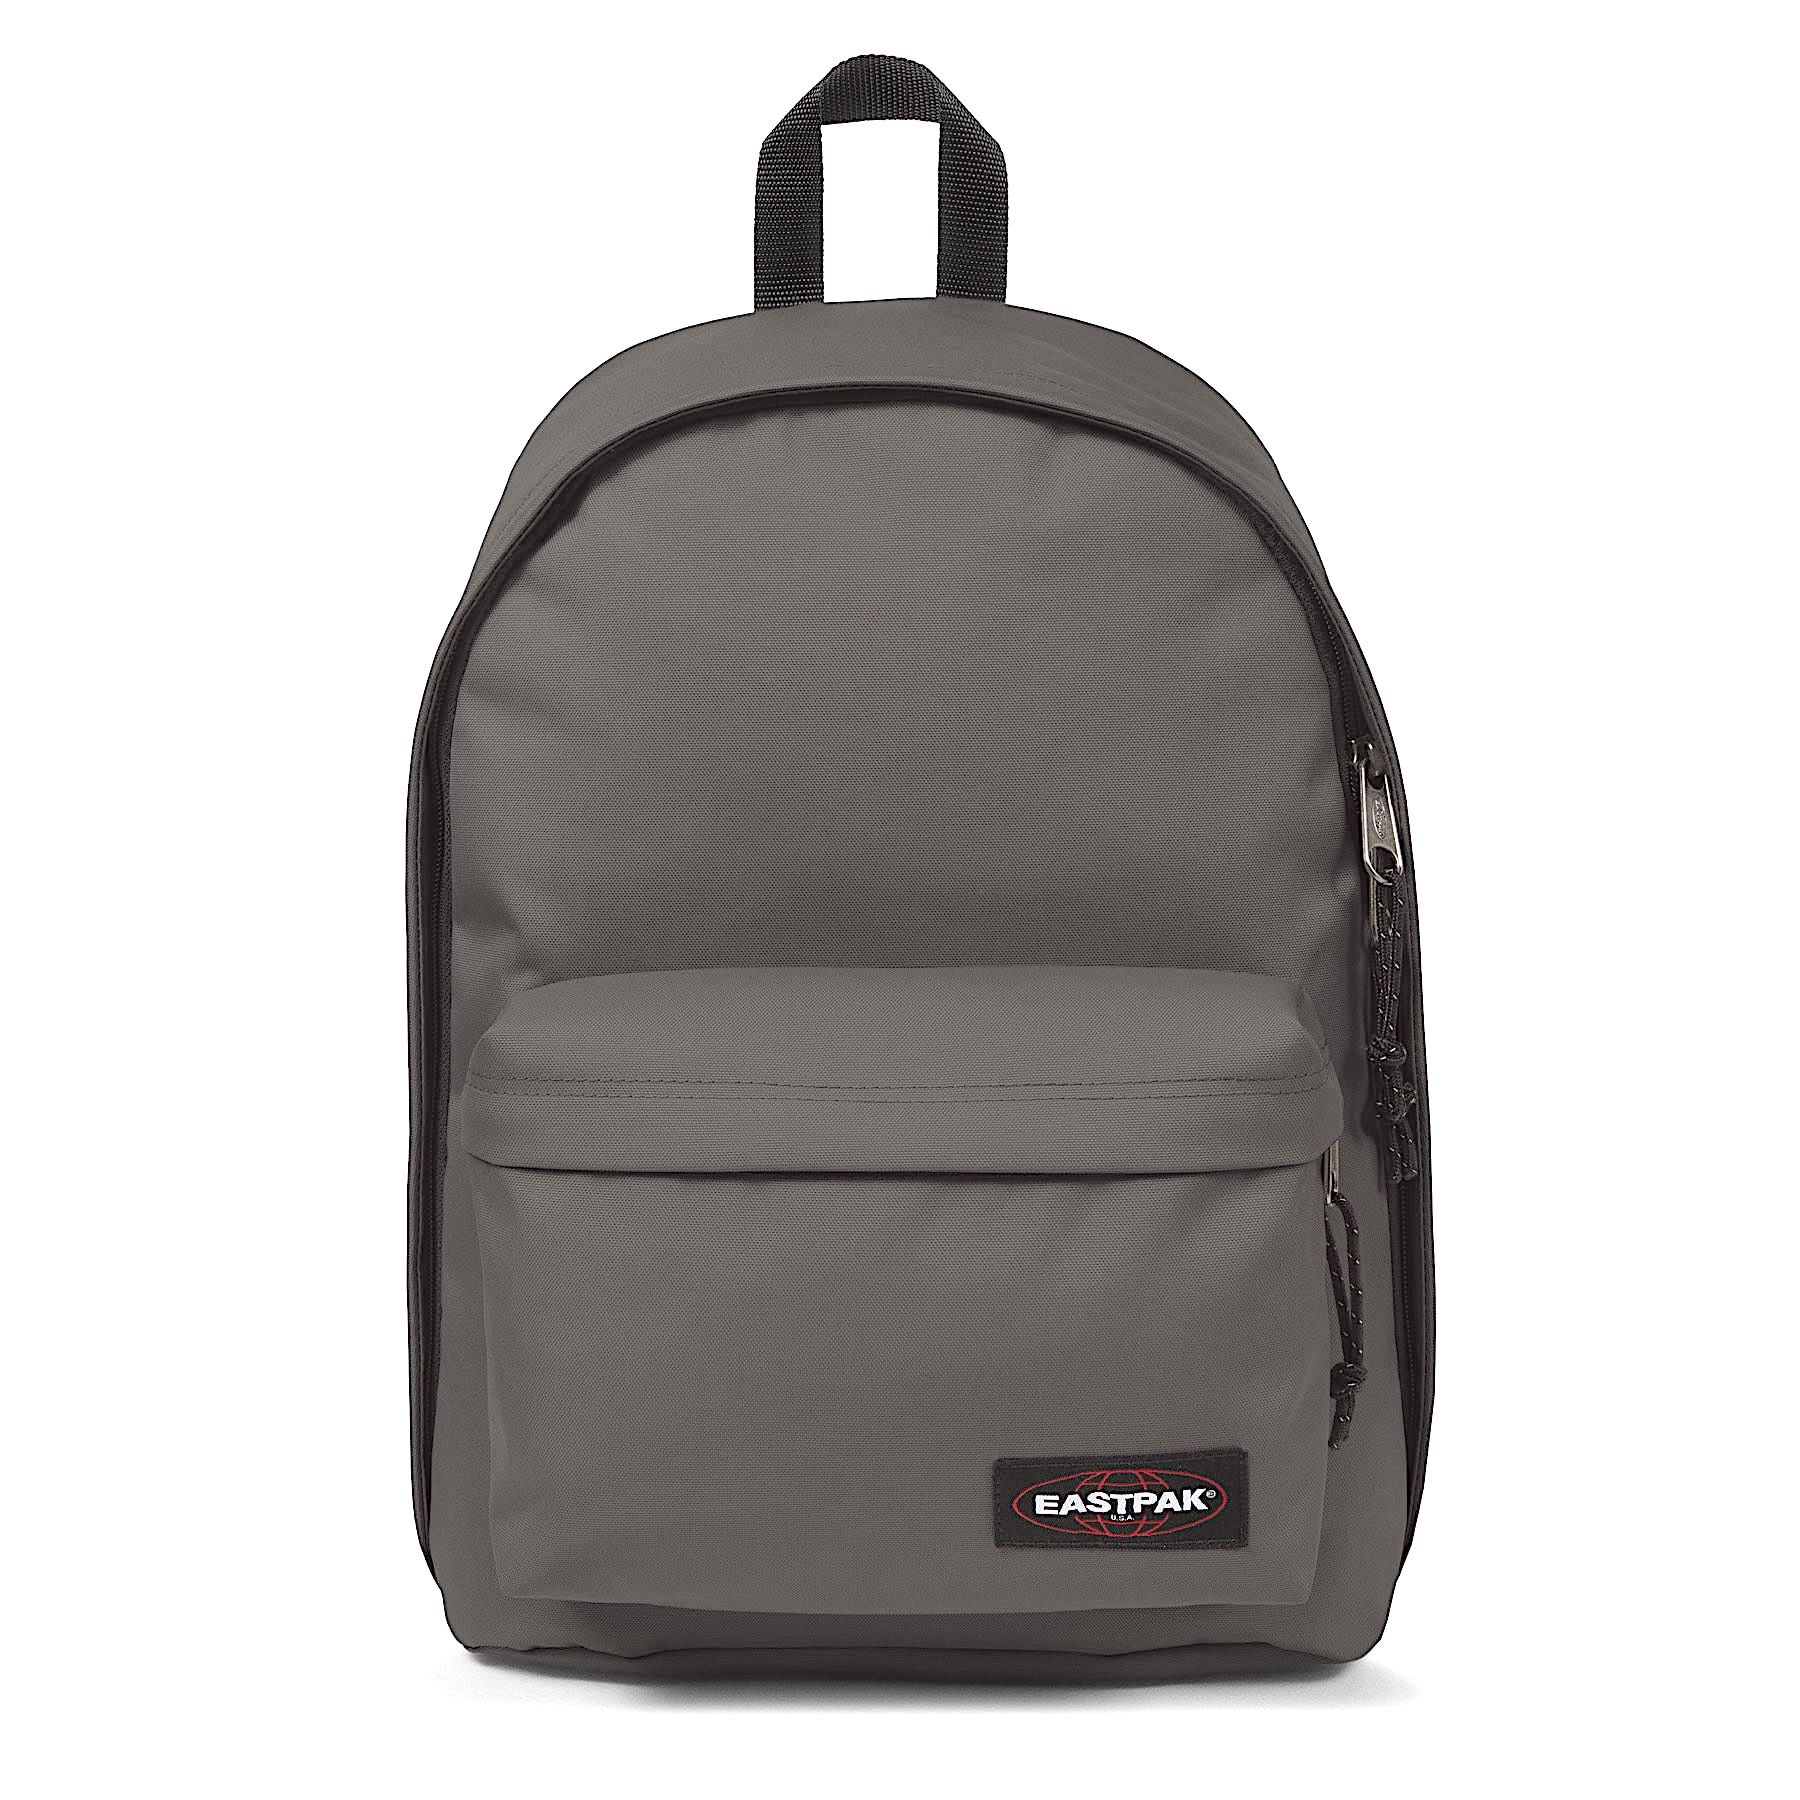 Eastpak Out of Office Backpack Bag Opgrade Grape 並行輸入品 